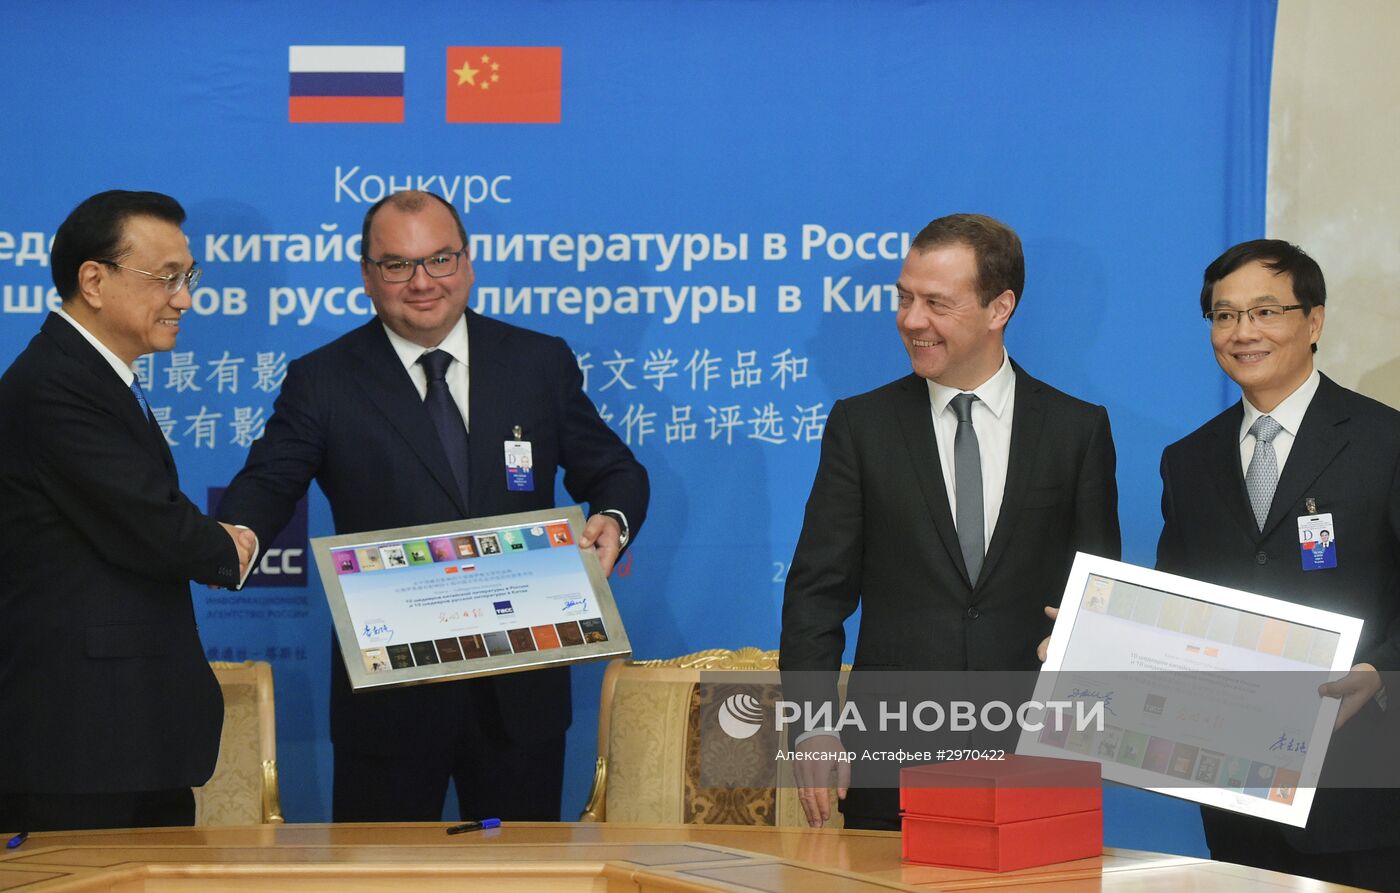 21-я регулярная встреча глав правительств России и Китая